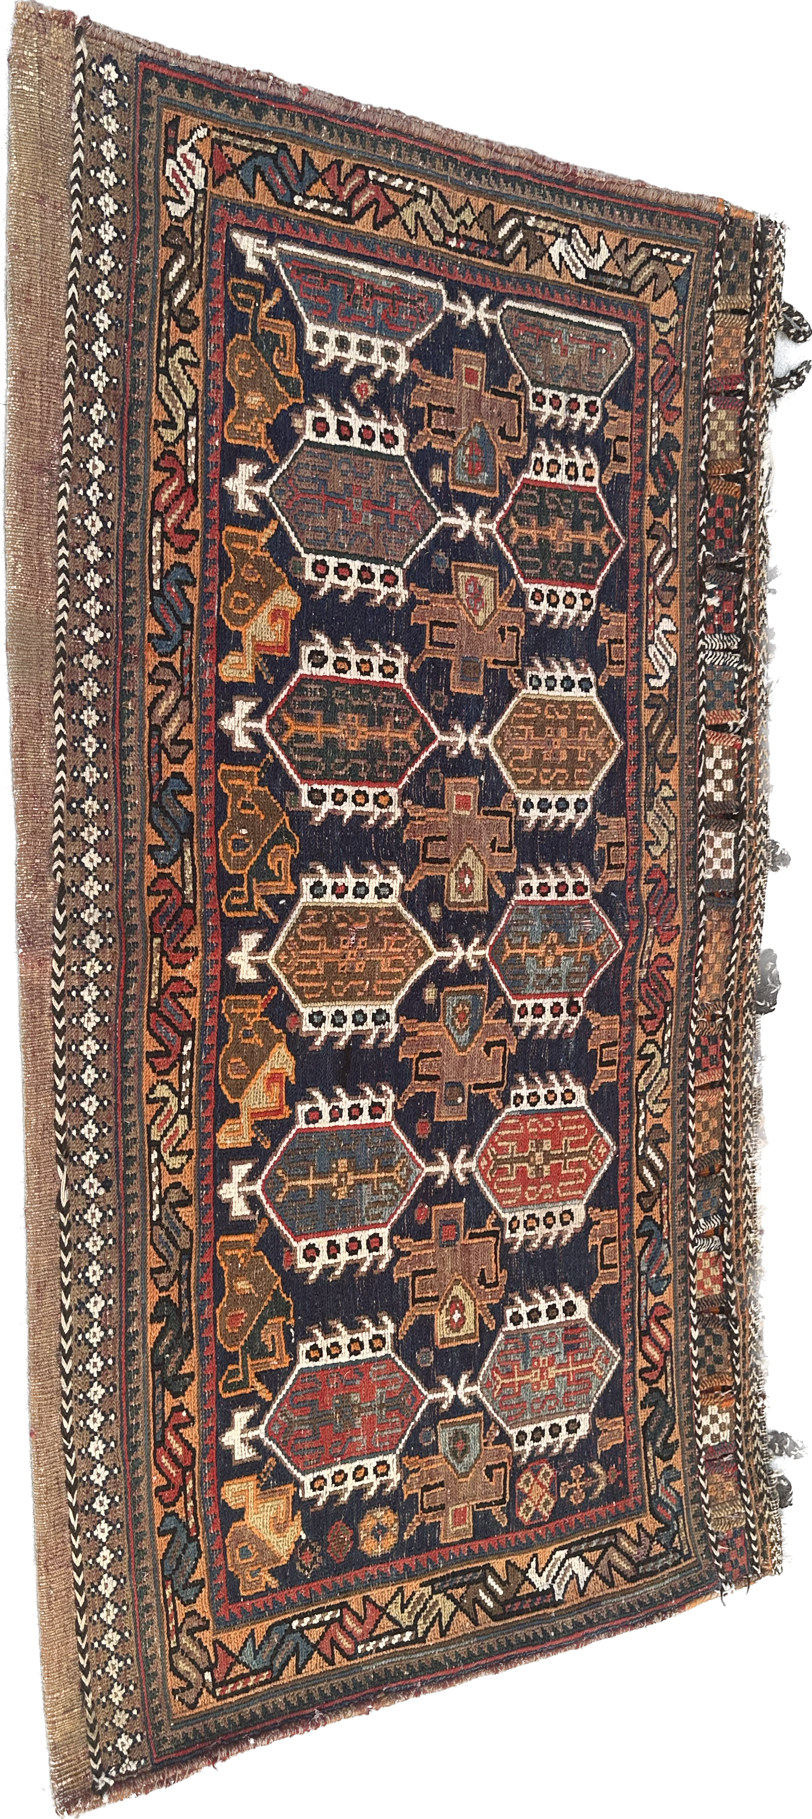 3’x5’ Vintage Persian Afshar Bag Face Decorative Rug